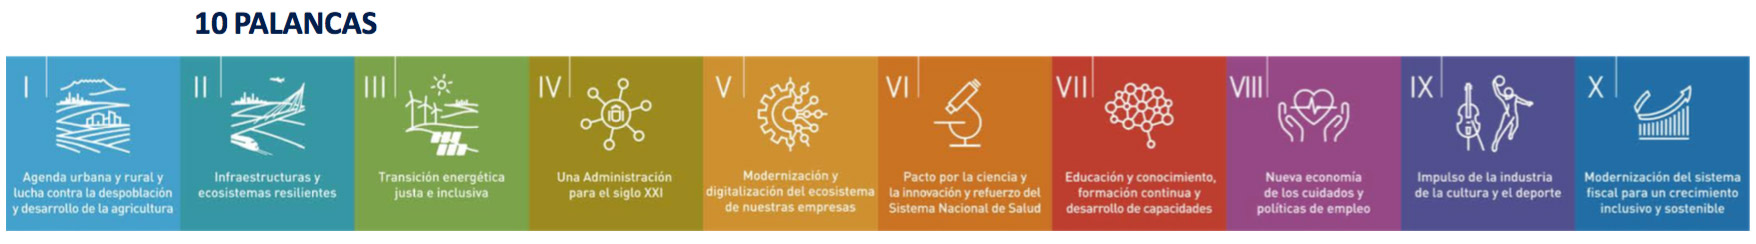 10 Políticas Palanca del Plan de Recuperación, Transformación y Resiliencia, 'España Puede'